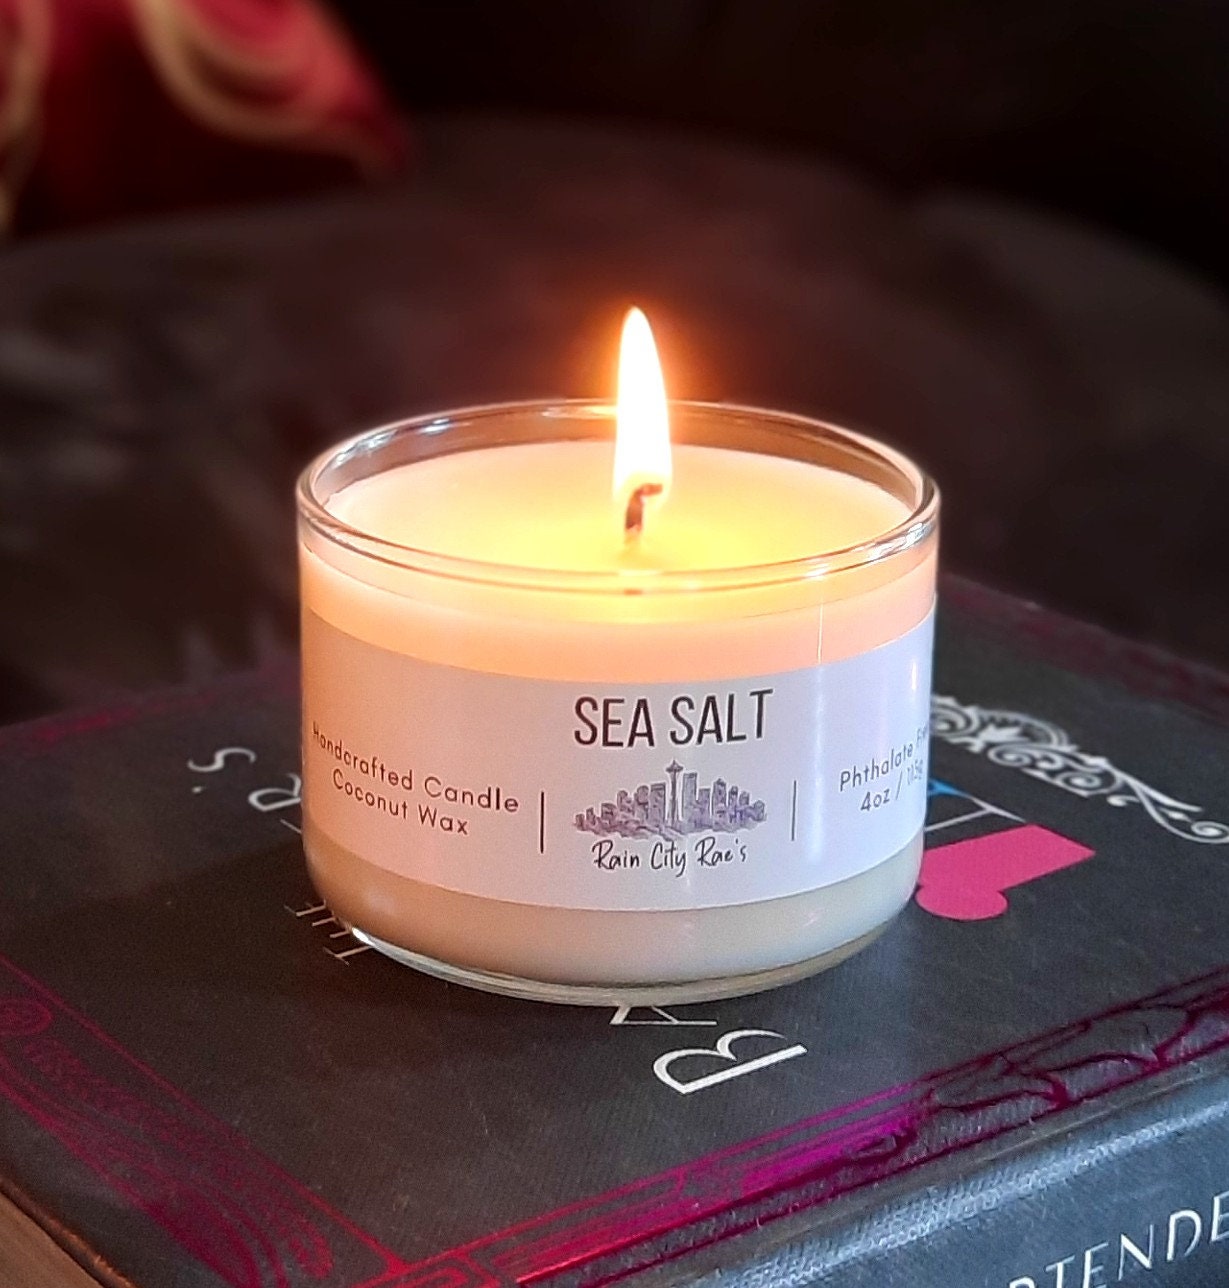 Sea Salt 4 oz Petite Candle